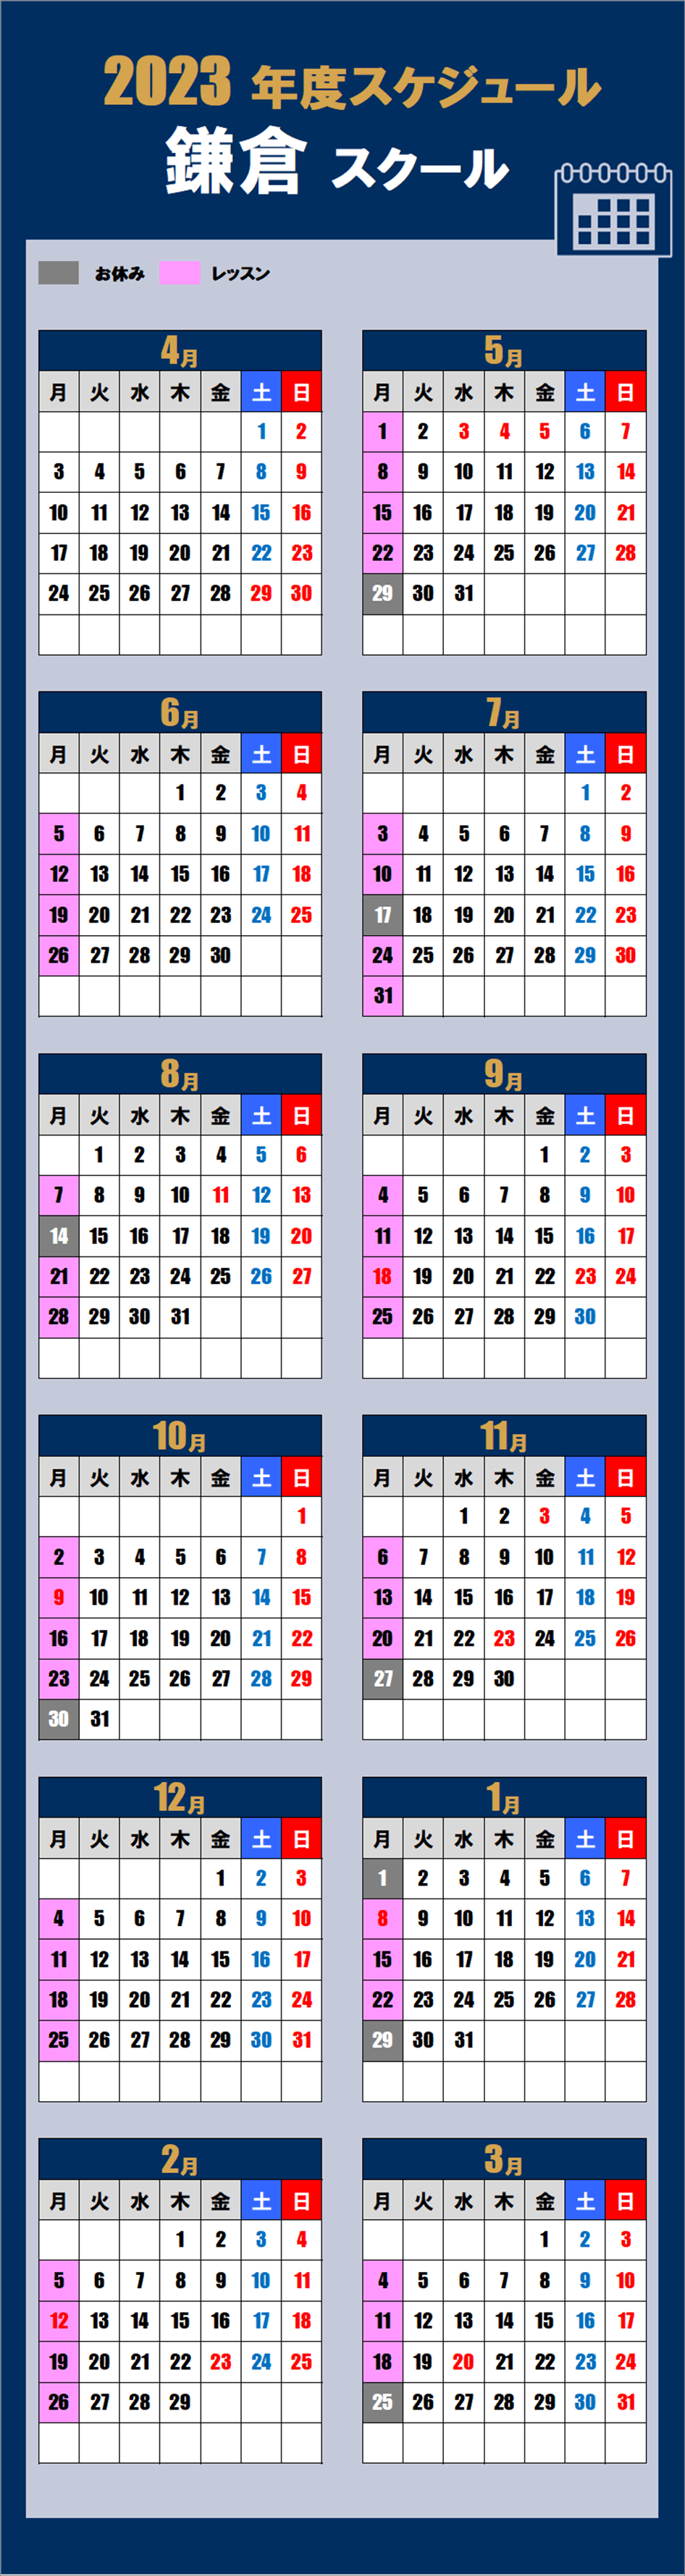 鎌倉スクールカレンダー